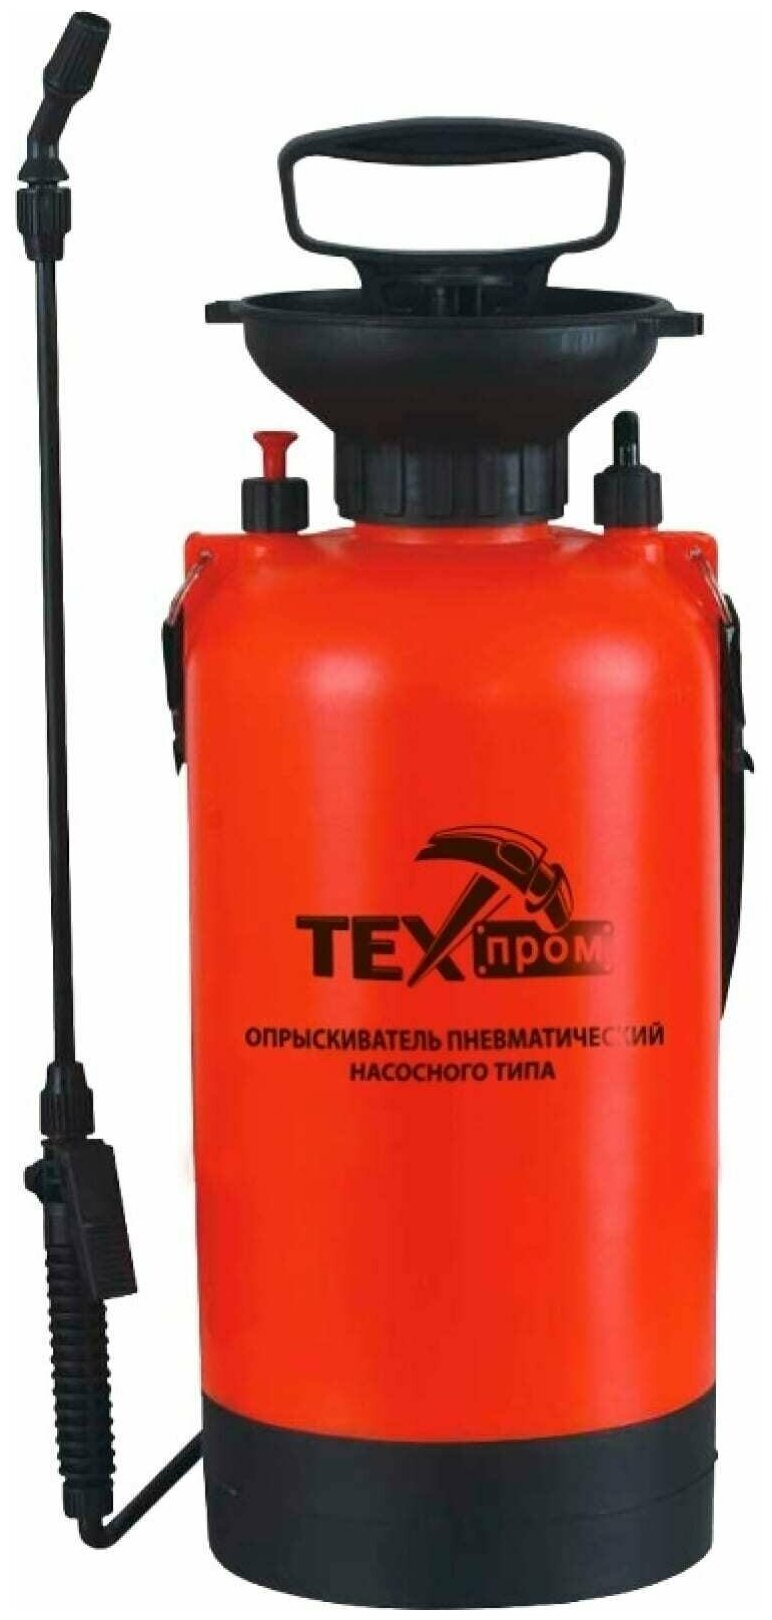 Опрыскиватель 5л Техпром (распылитель пневматический насосного типа) - фотография № 1